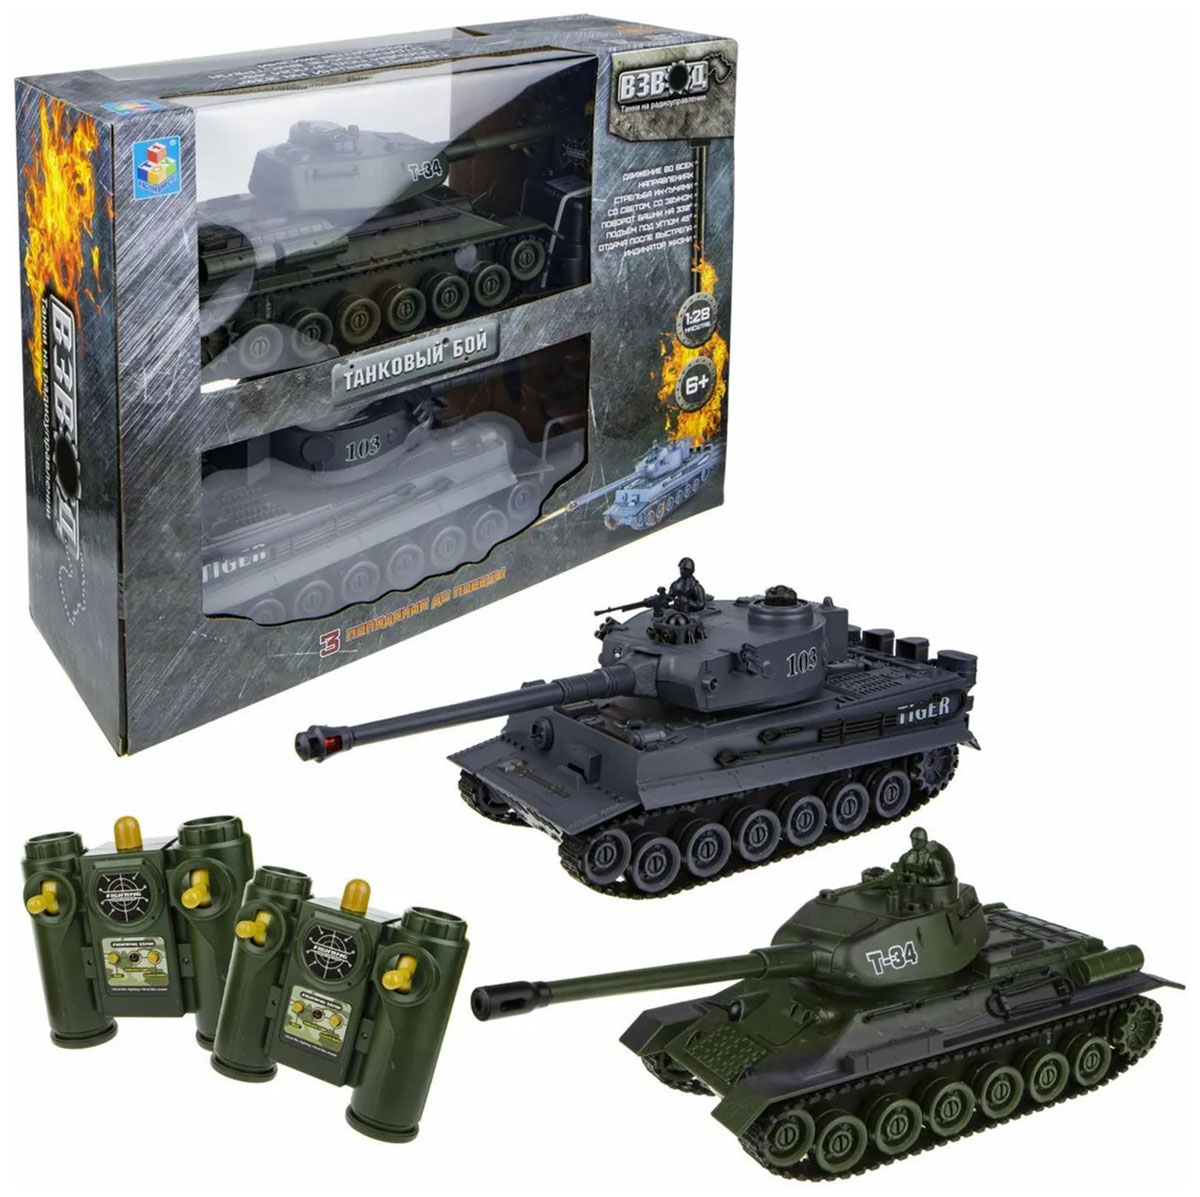 Танк 1 Toy Взвод танковый бой р/у (2 танка), 2,4 ГГц, 1:28 (35 см) танковый бой военная стратегия на радиоуправлении в наборе 2 танка